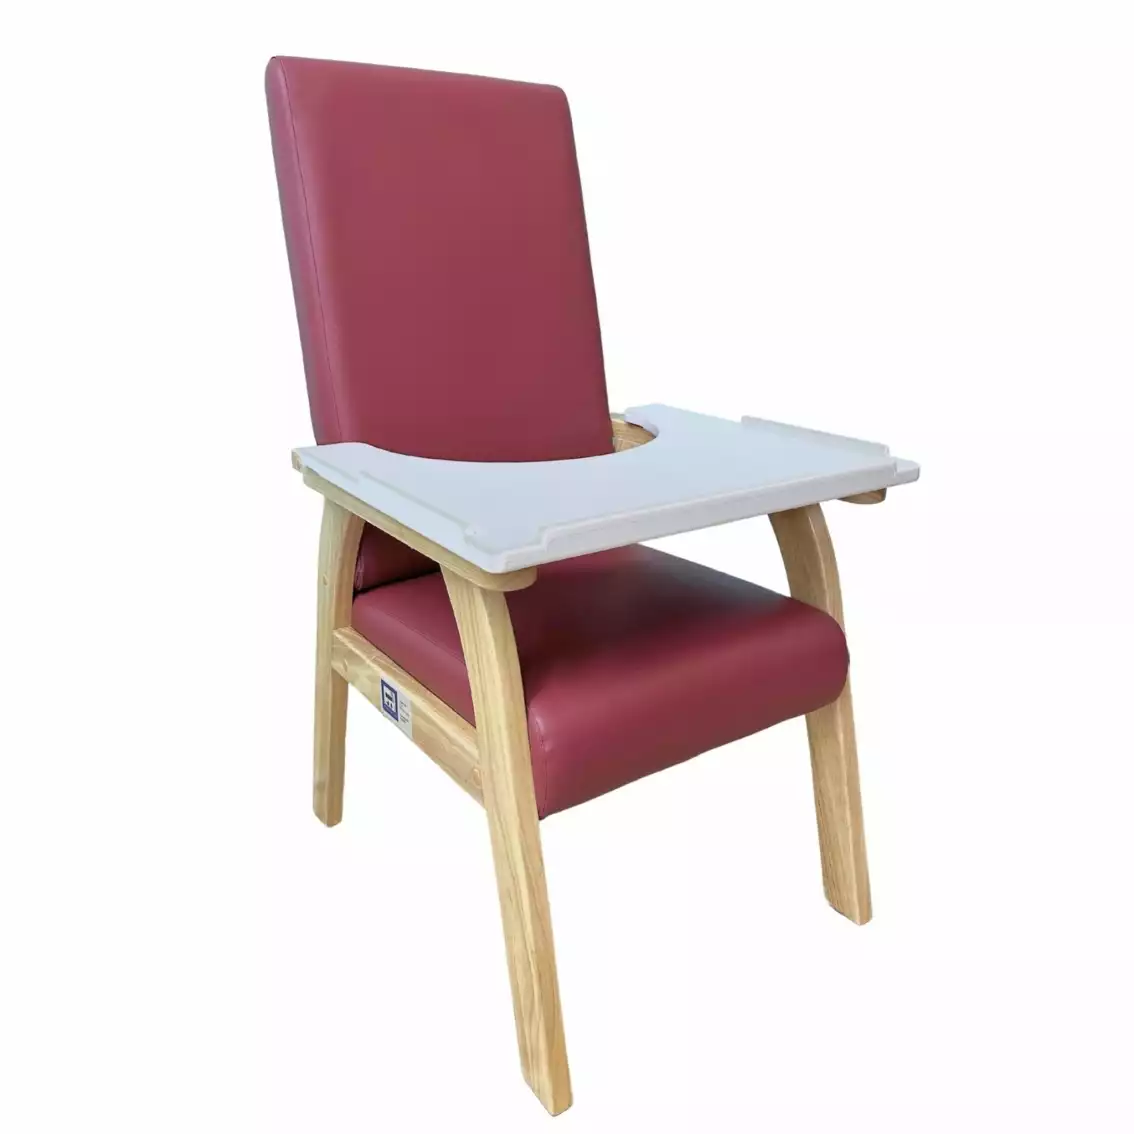 木製高背椅|穩固舒適